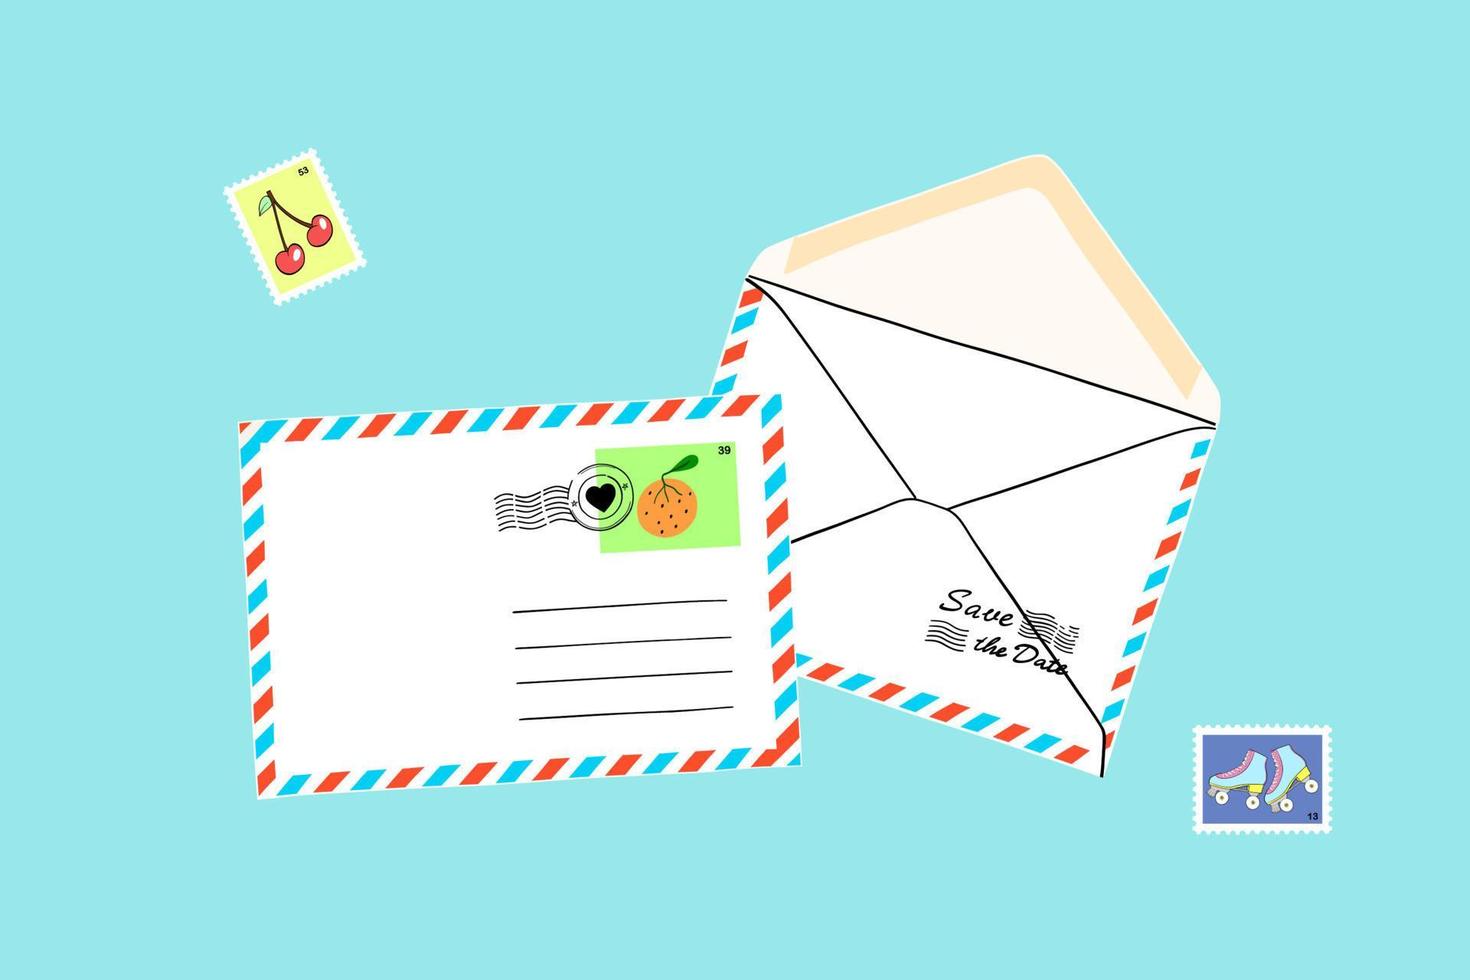 conjunto postal de desenhos animados. envelopes artesanais com vários selos postais, carimbos postais. ilustração vetorial colorida plana dos desenhos animados vetor